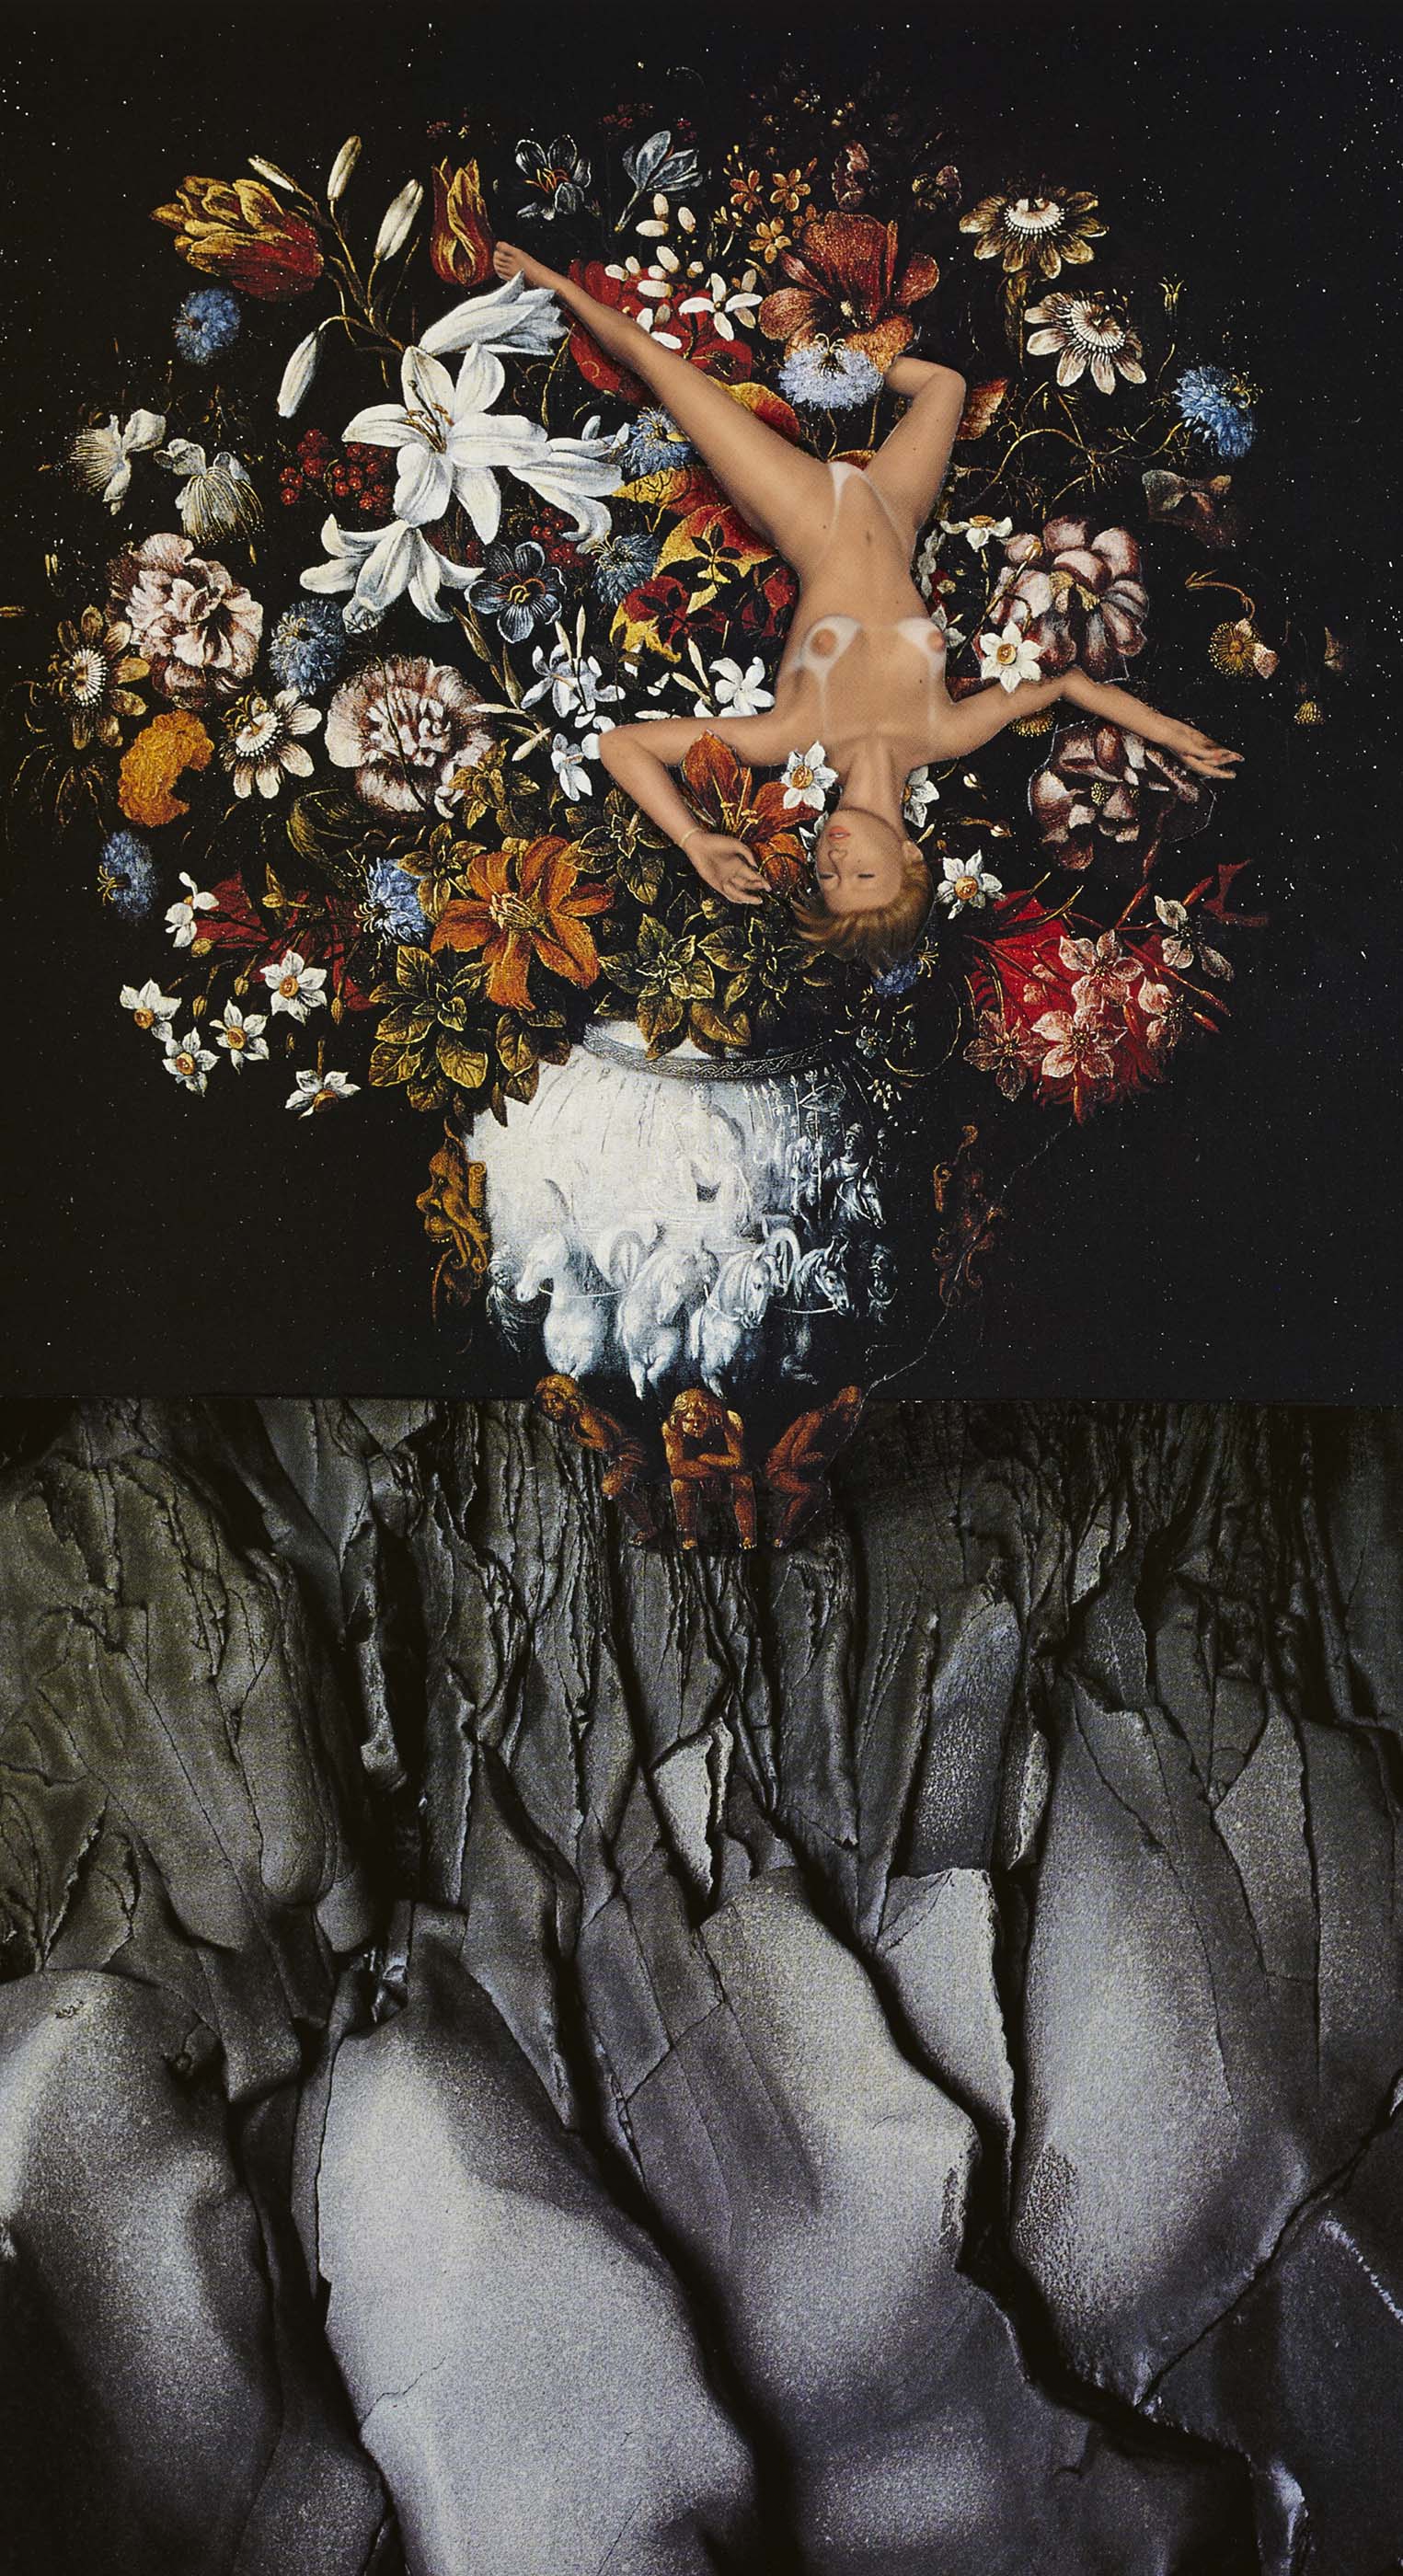 O.T., 2012
Collage, schwarzer Farbstift auf Papier
29.8 x 16.3 cm
Privatbesitz